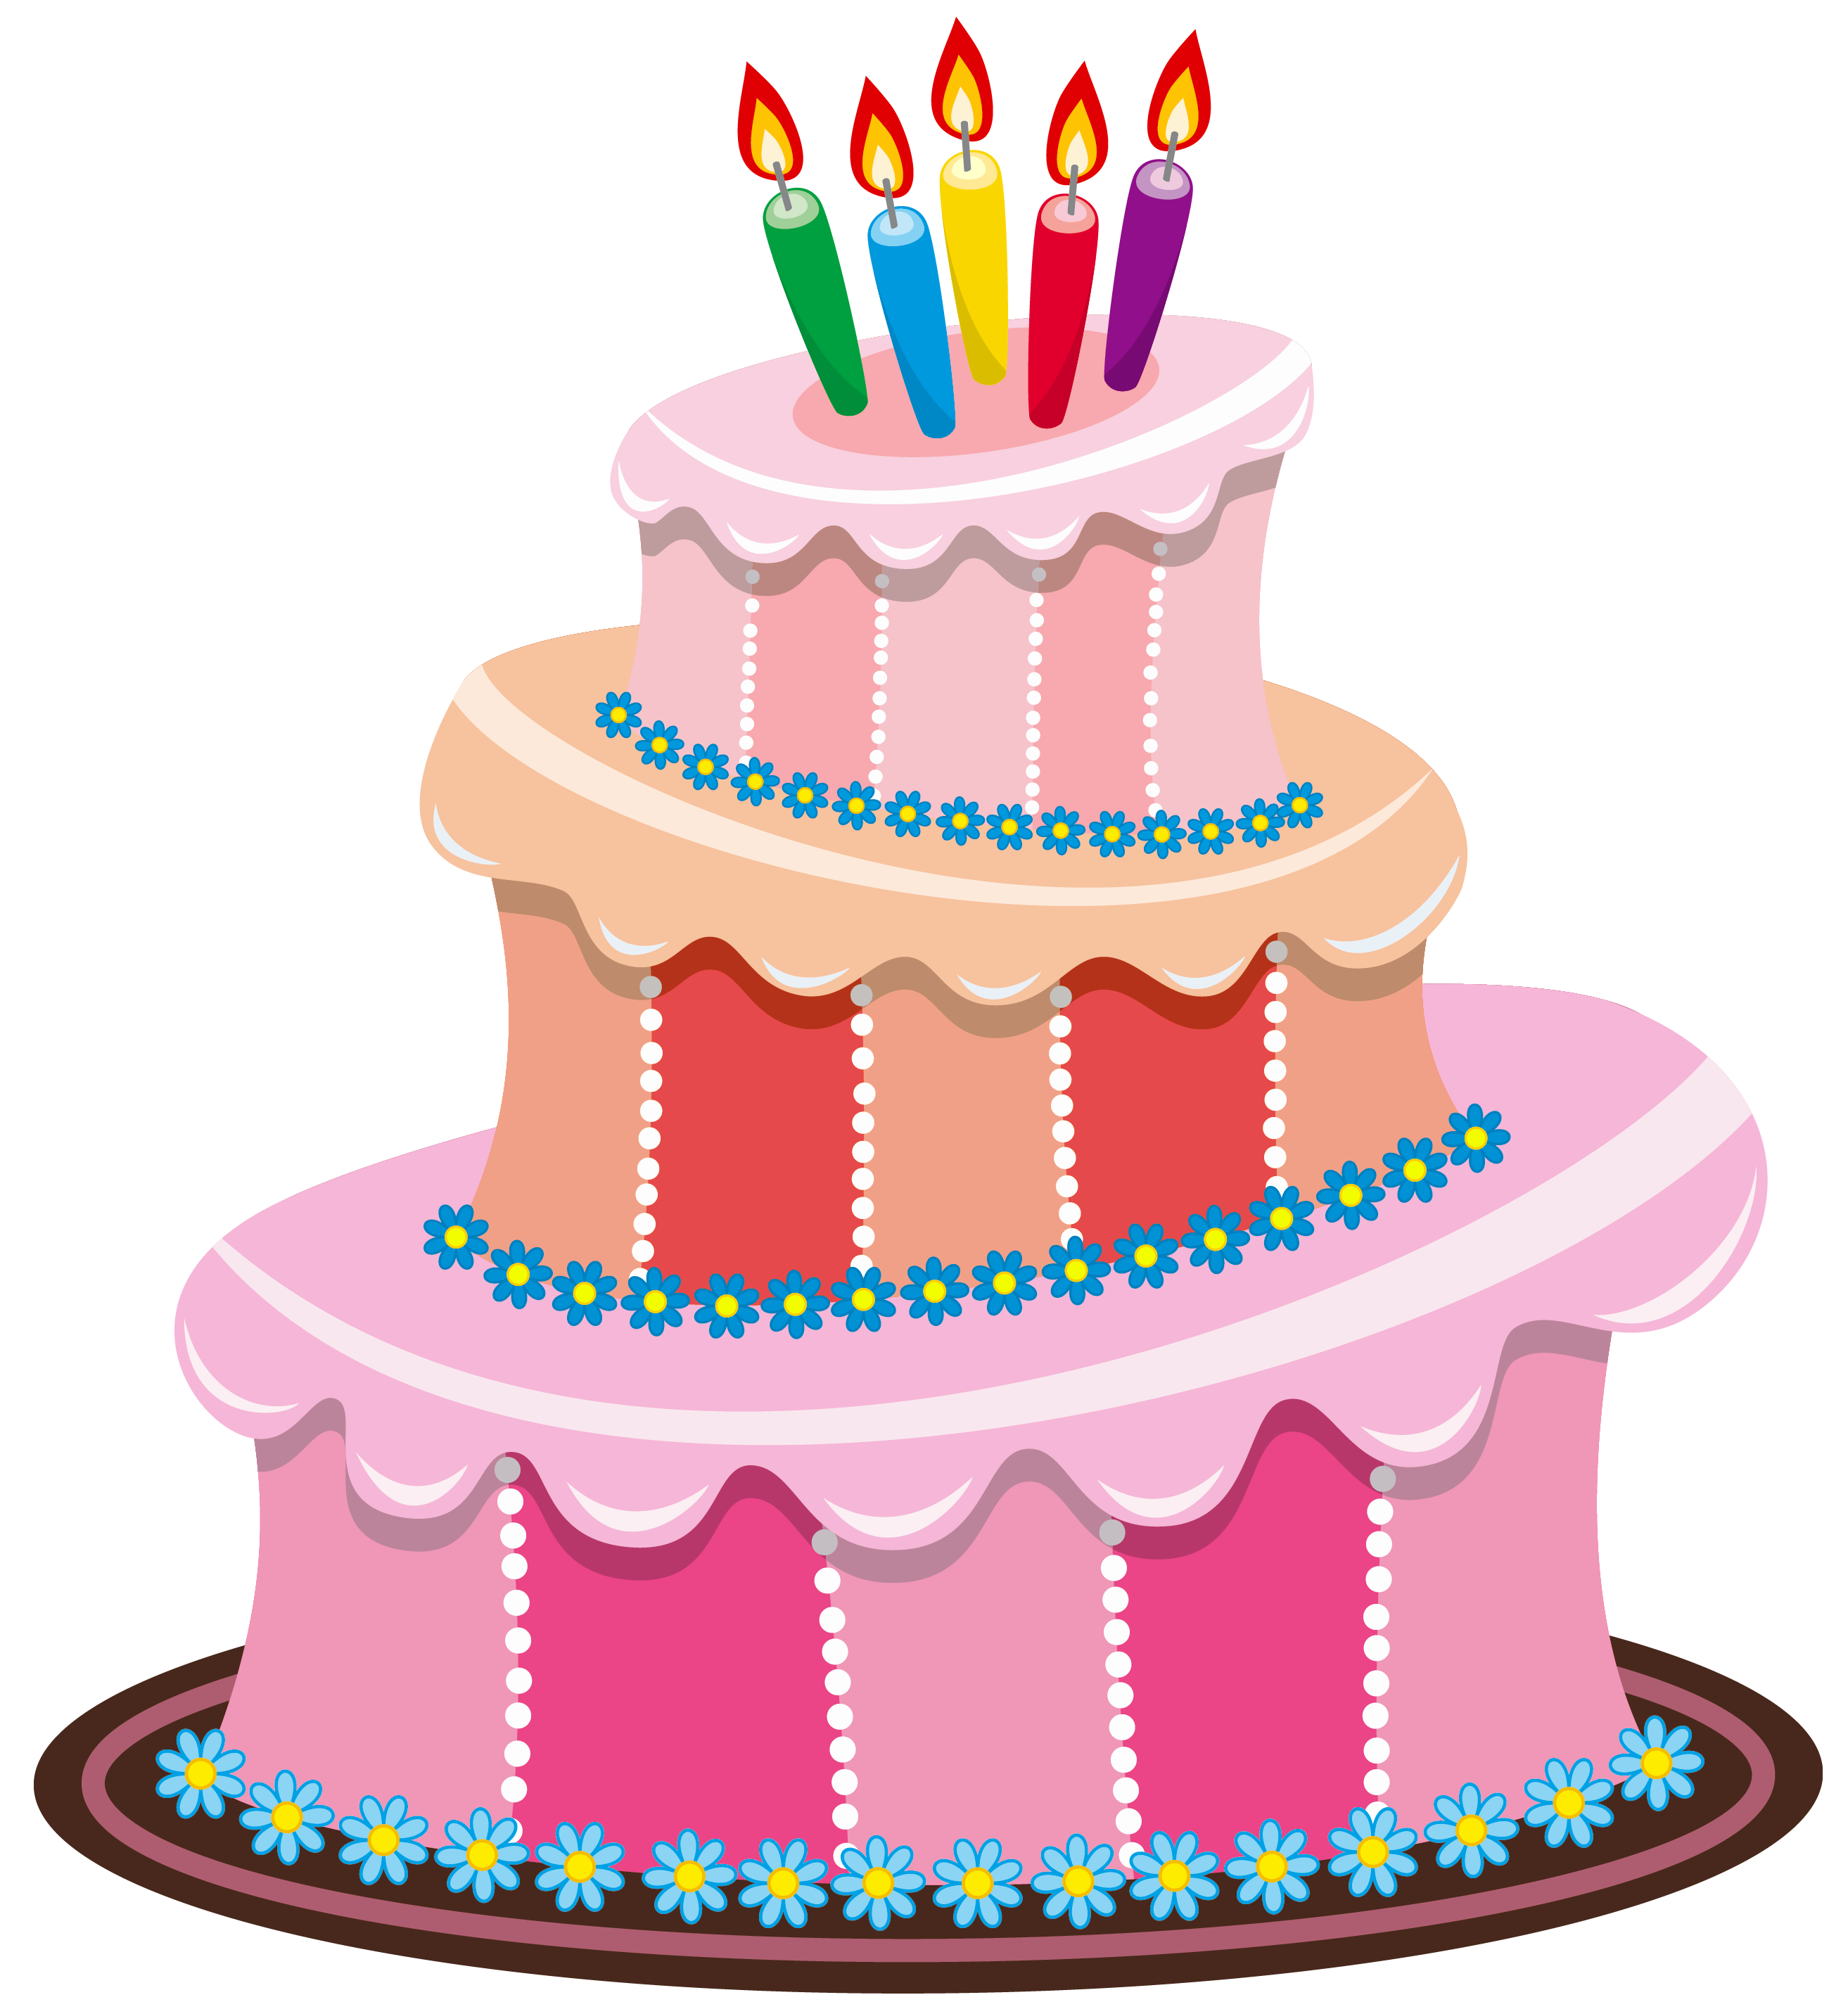 Free Free Birthday Cake Images, Download Free Free Birthday Cake Images